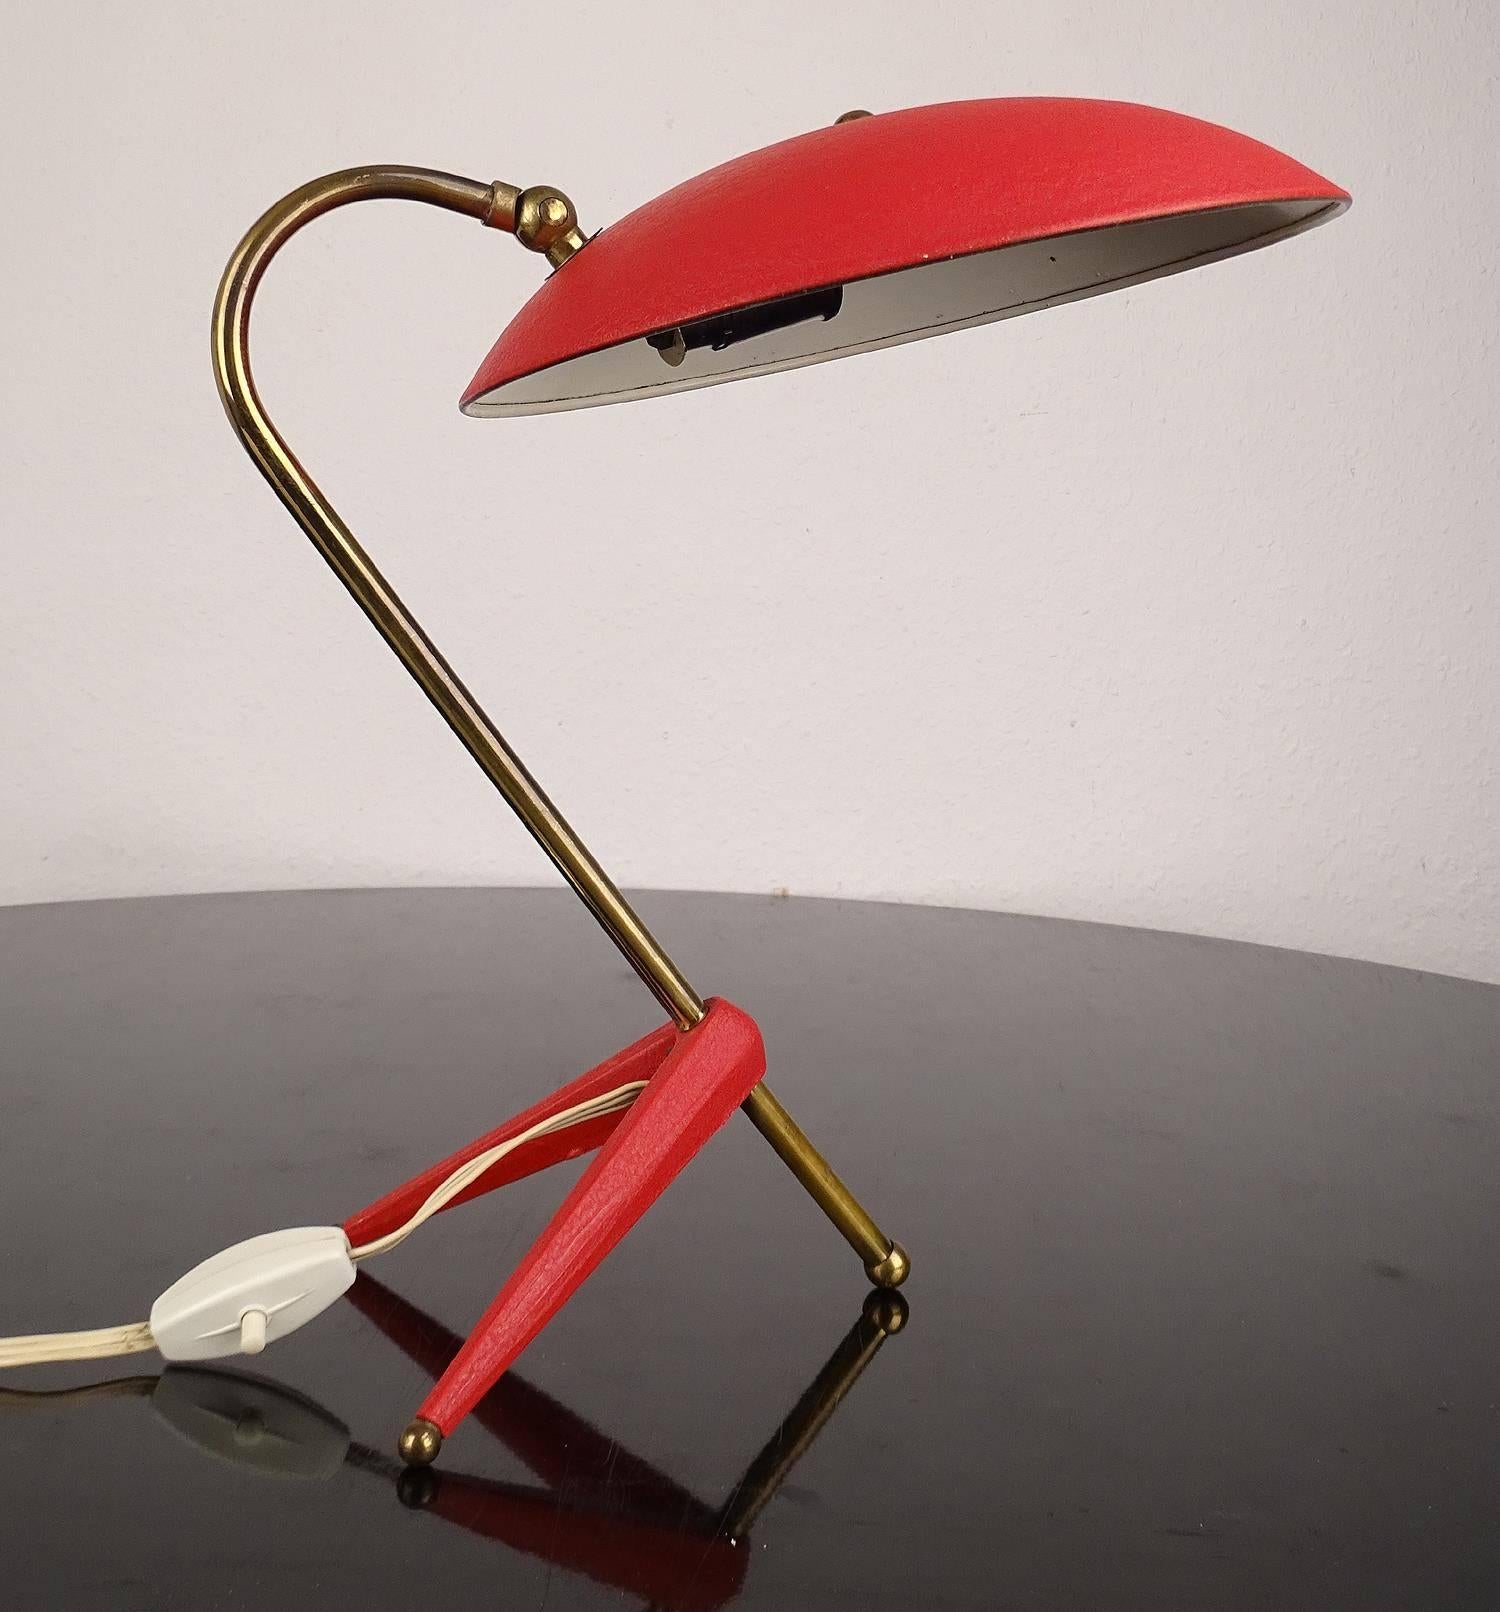 Aluminum Stilnovo  Style Table Lamp, 1950s Italian Modernist Design  